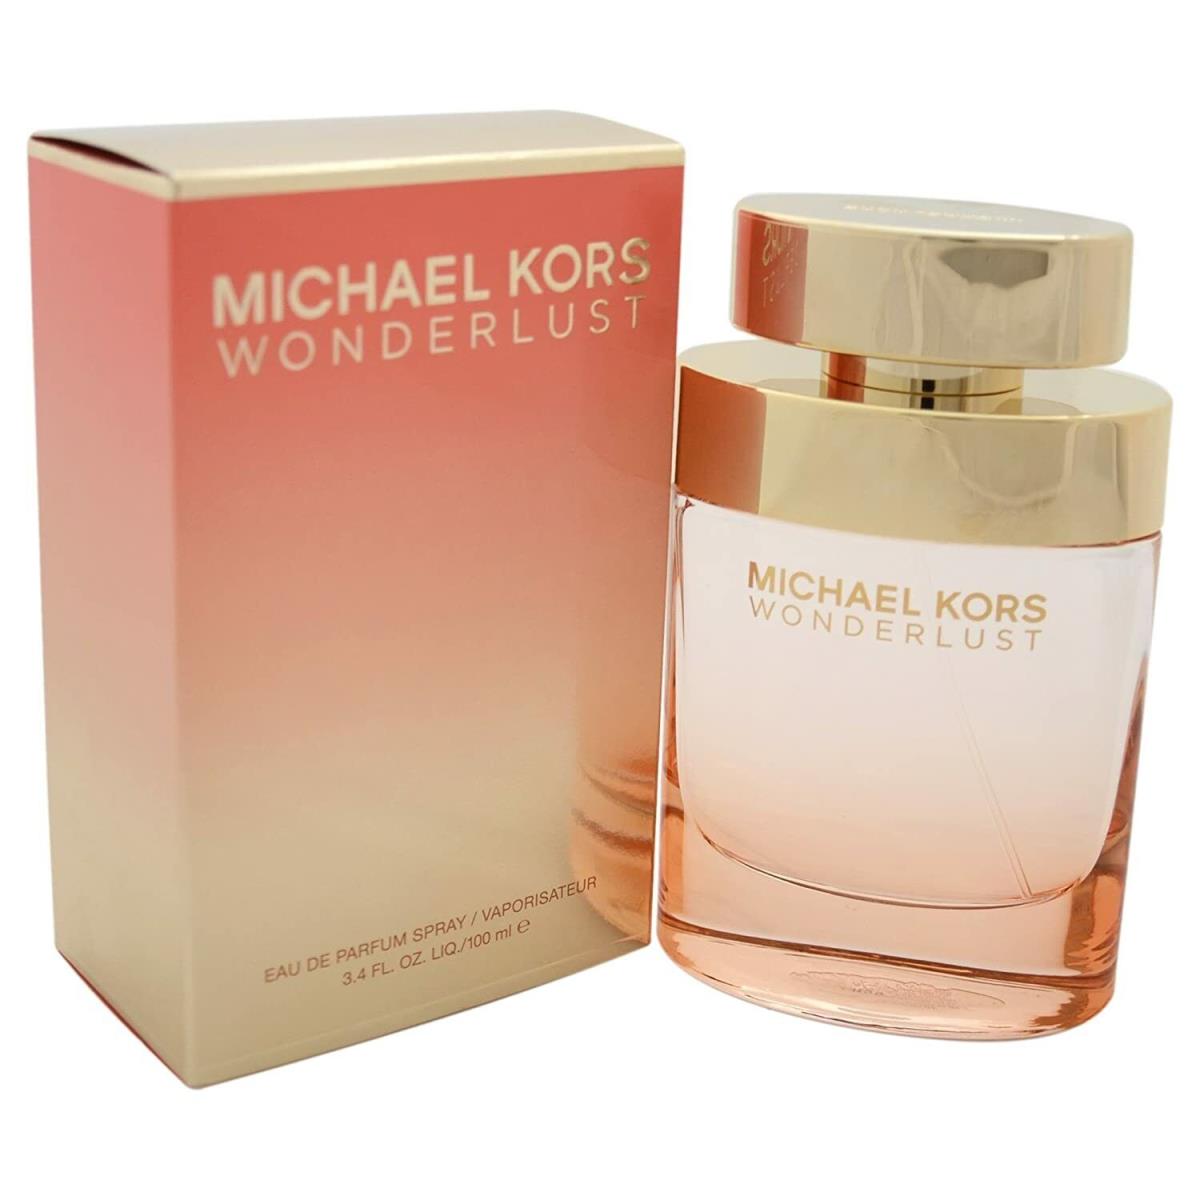 Wonderlust by Michael Kors 3.4 Fl oz Edp Spray For Women